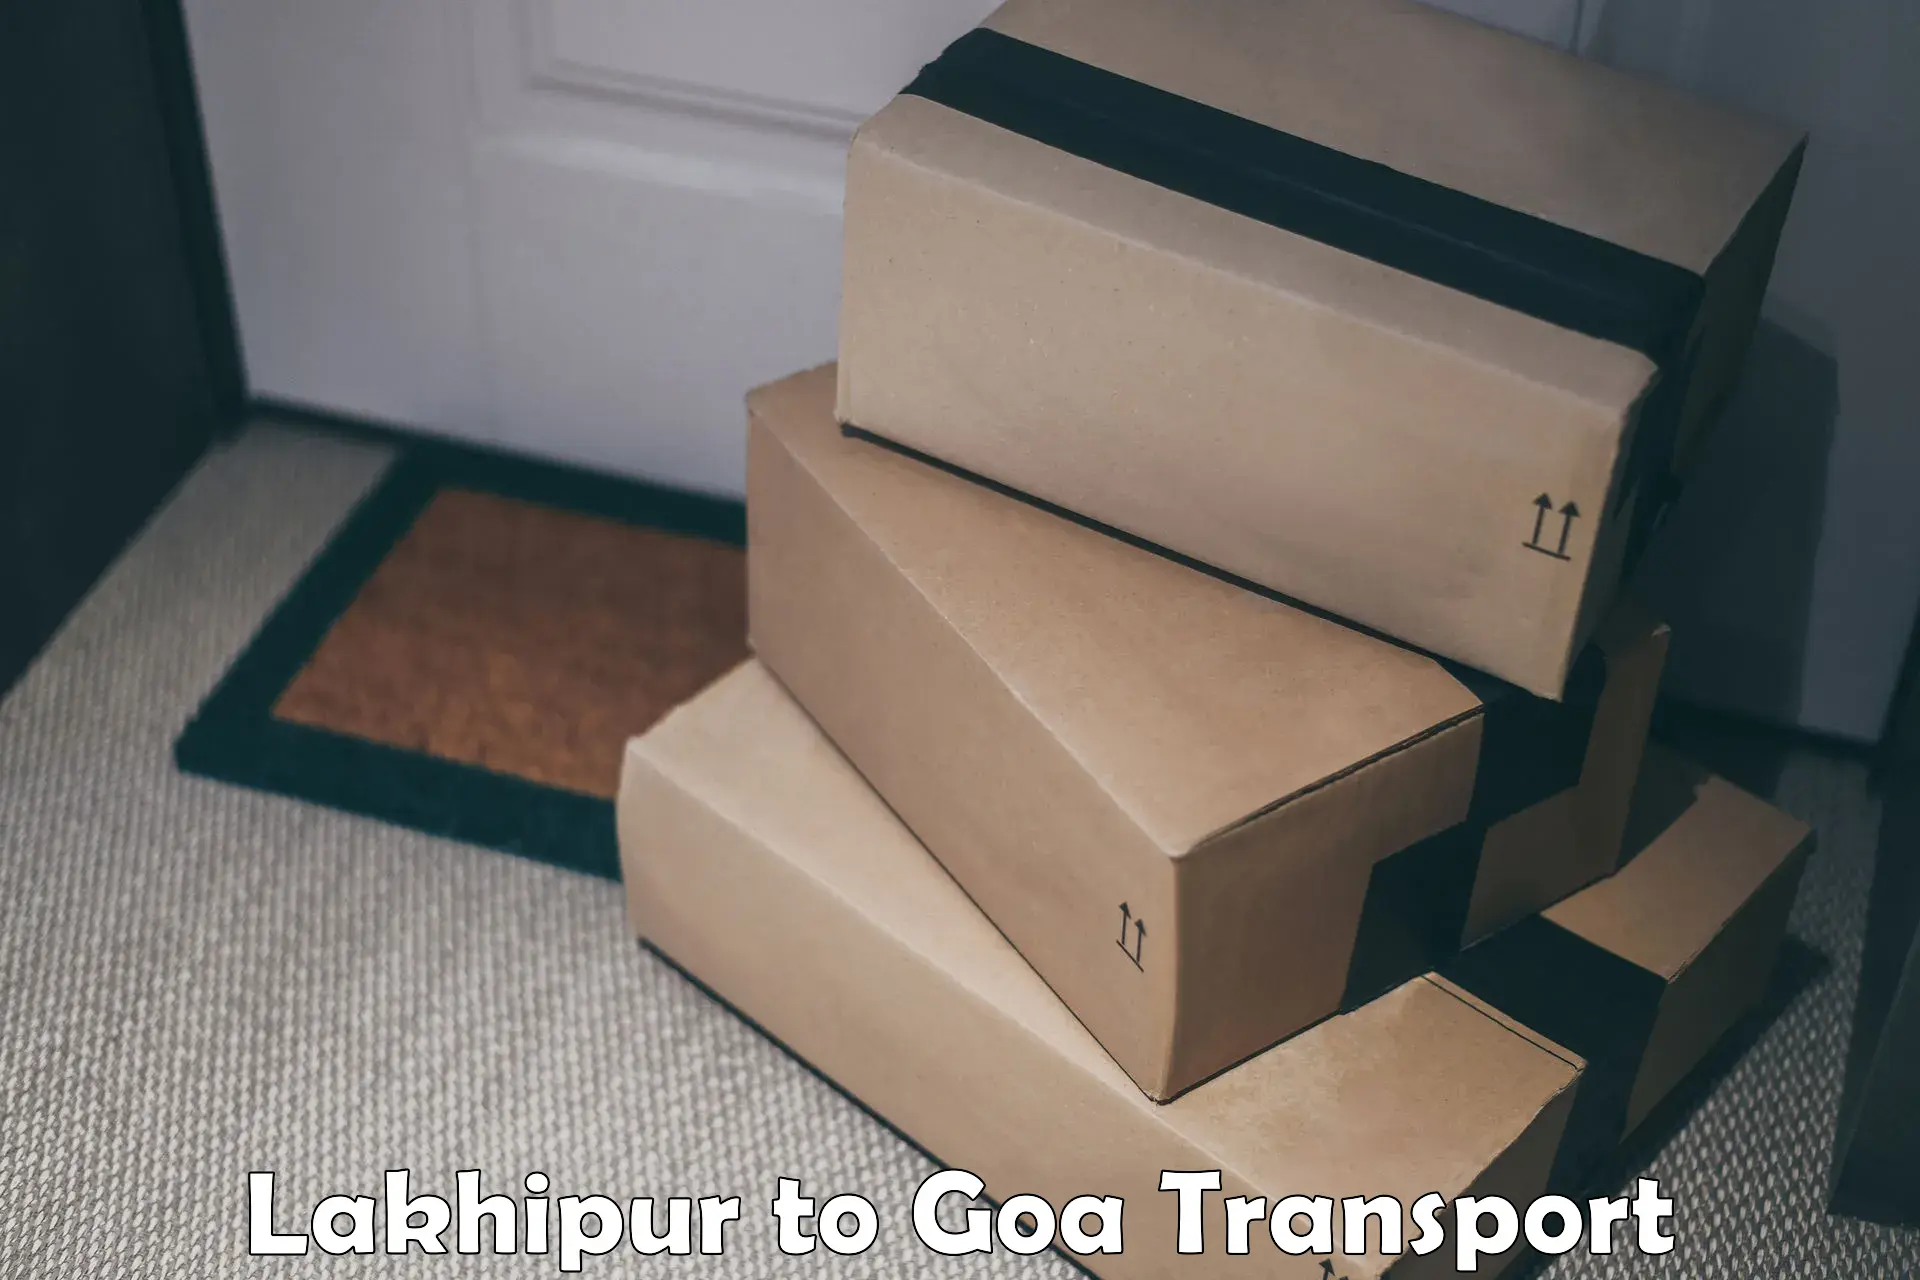 Daily transport service Lakhipur to Vasco da Gama